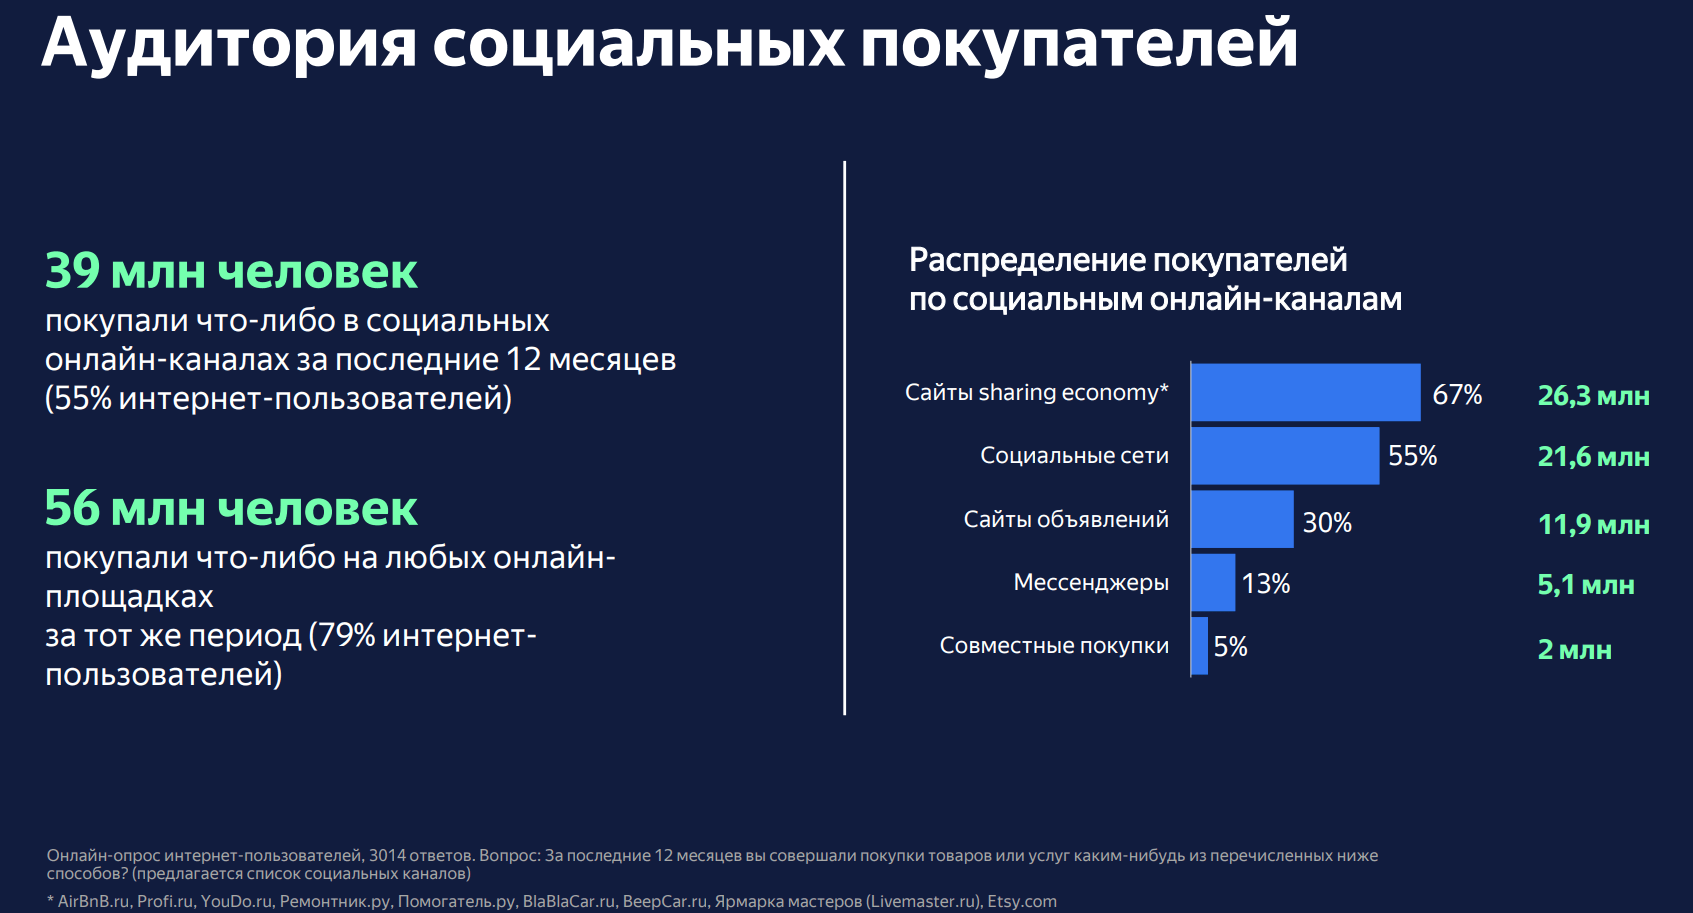 Данные о покупках в соцсетях от Data Insight и Яндекс.Кассы